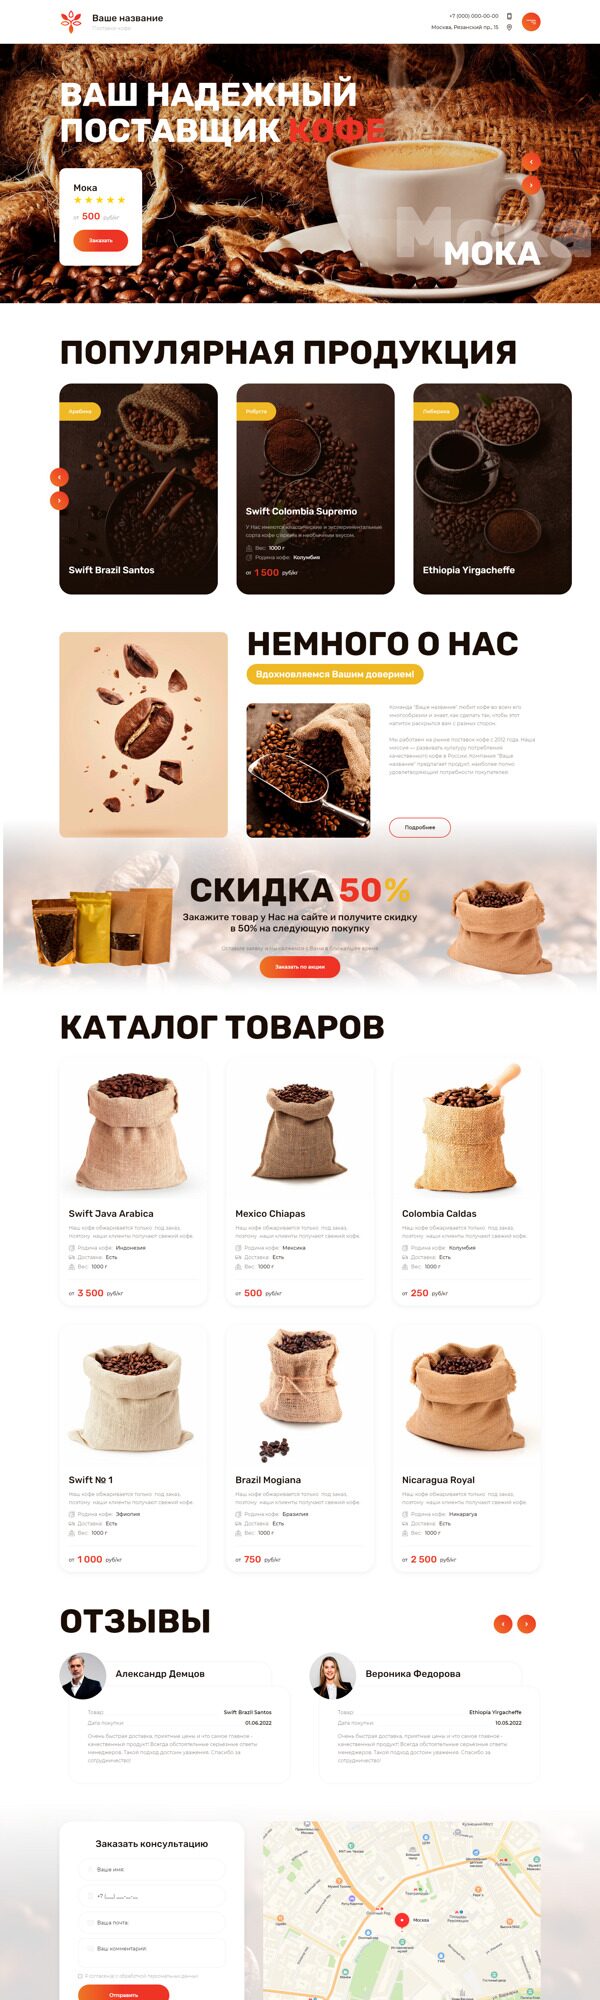 Готовый Сайт-Бизнес № 4203090 - Поставки кофе (Десктопная версия)